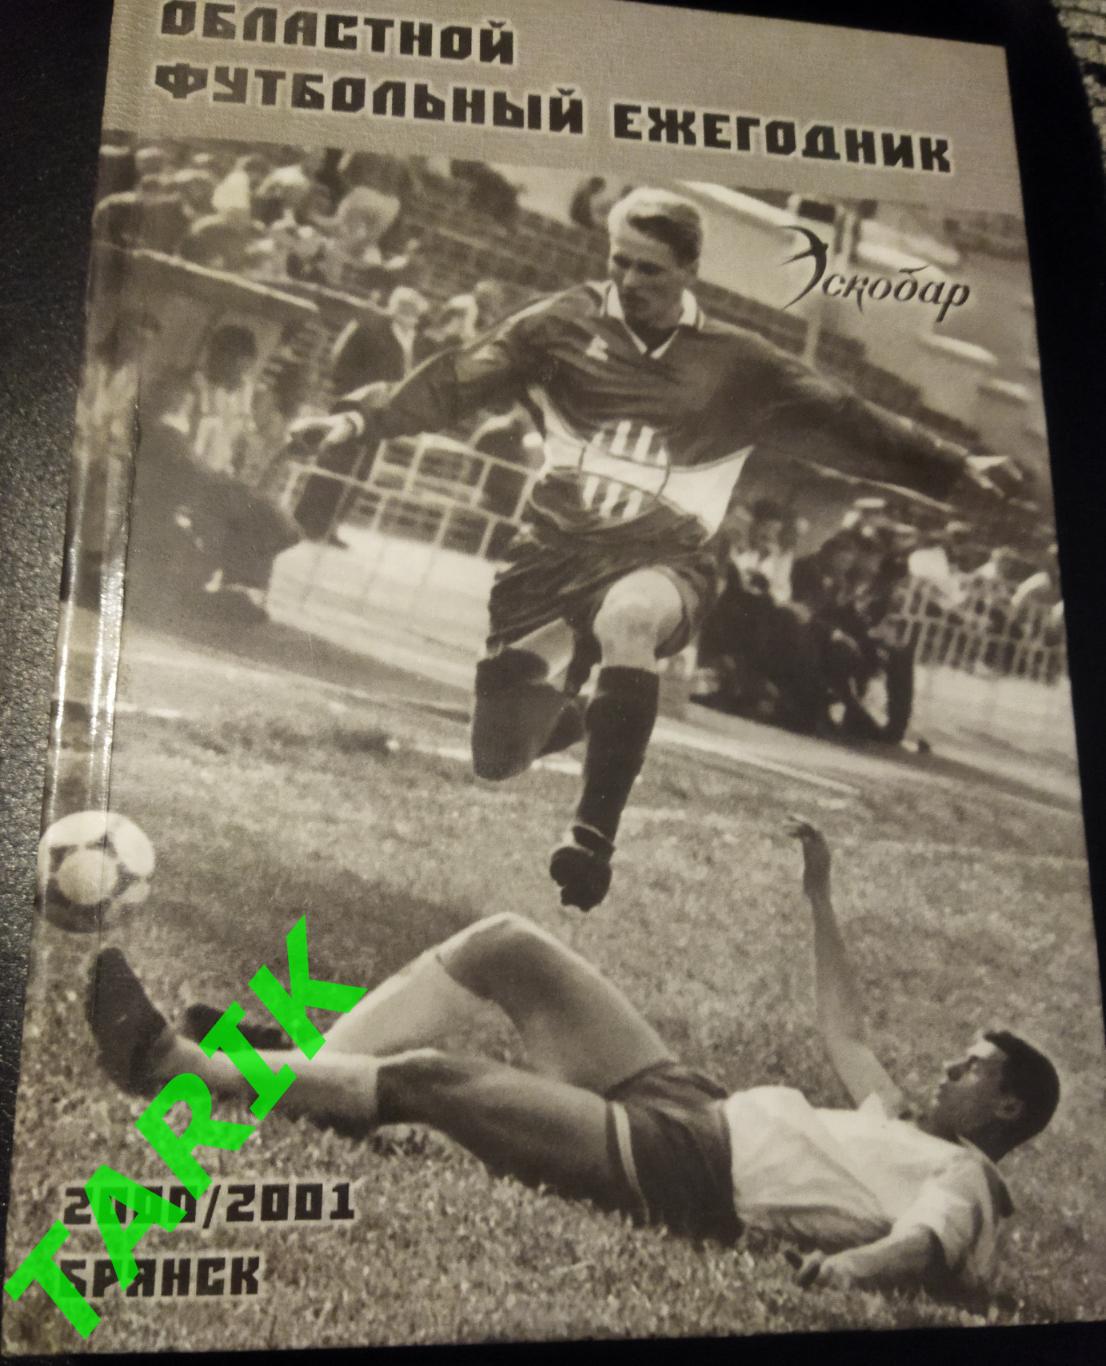 Областной футбольный ежегодник 2000/2001 Брянск